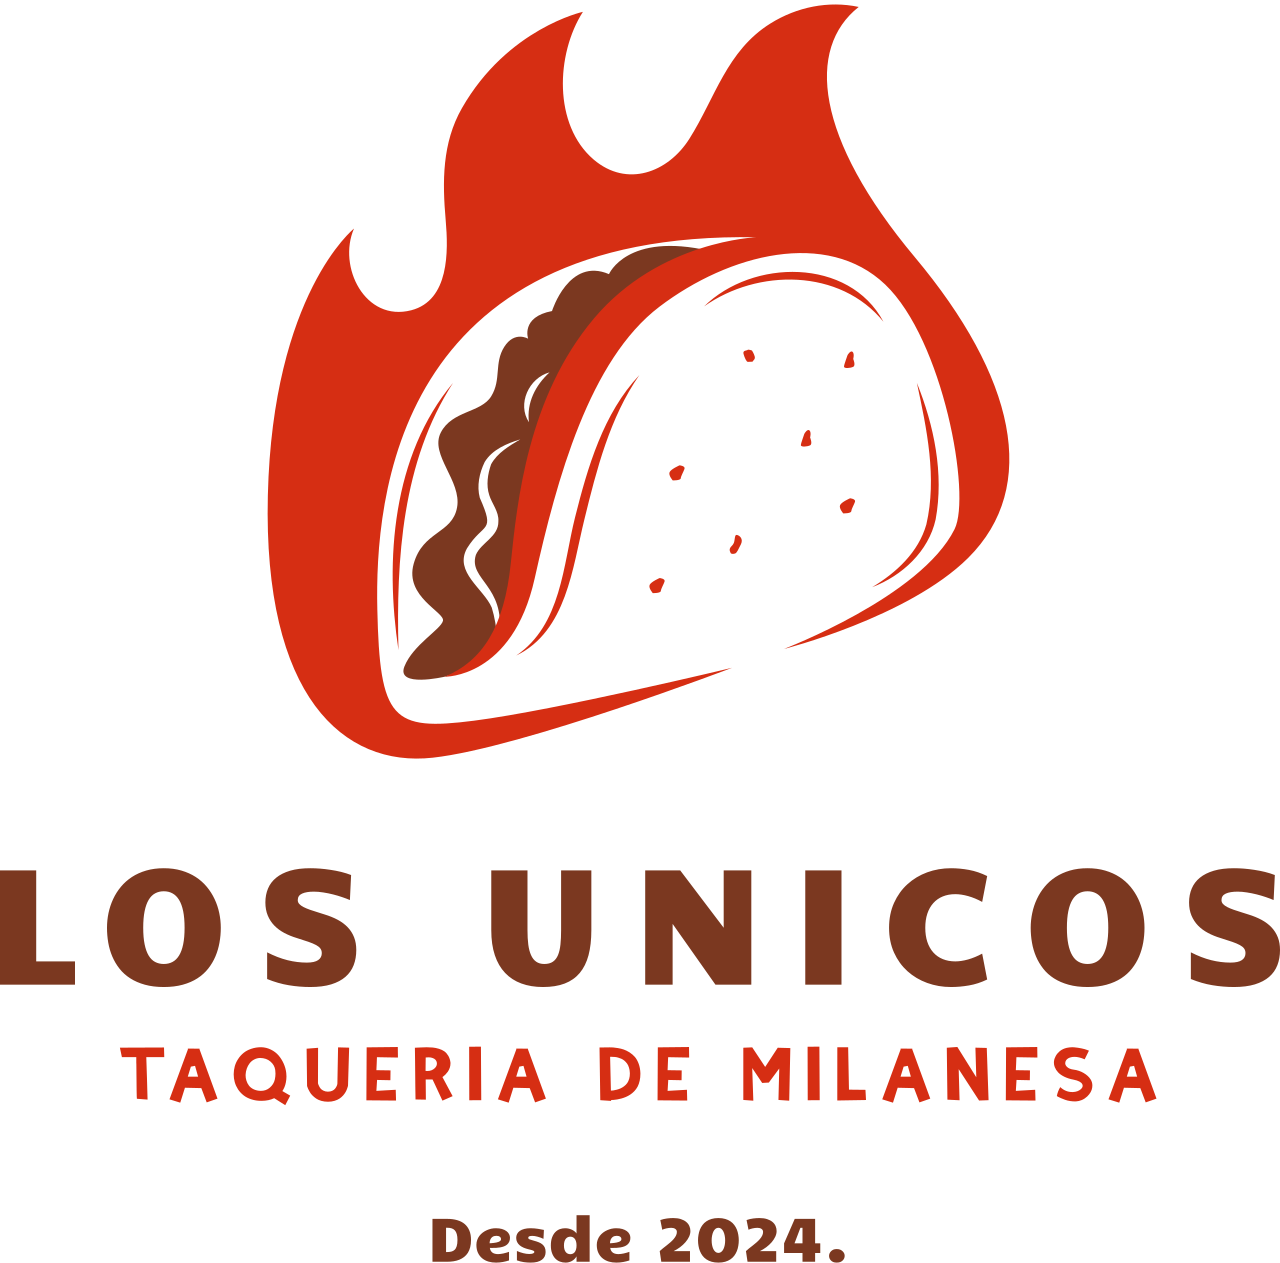 Los Unicos's logo